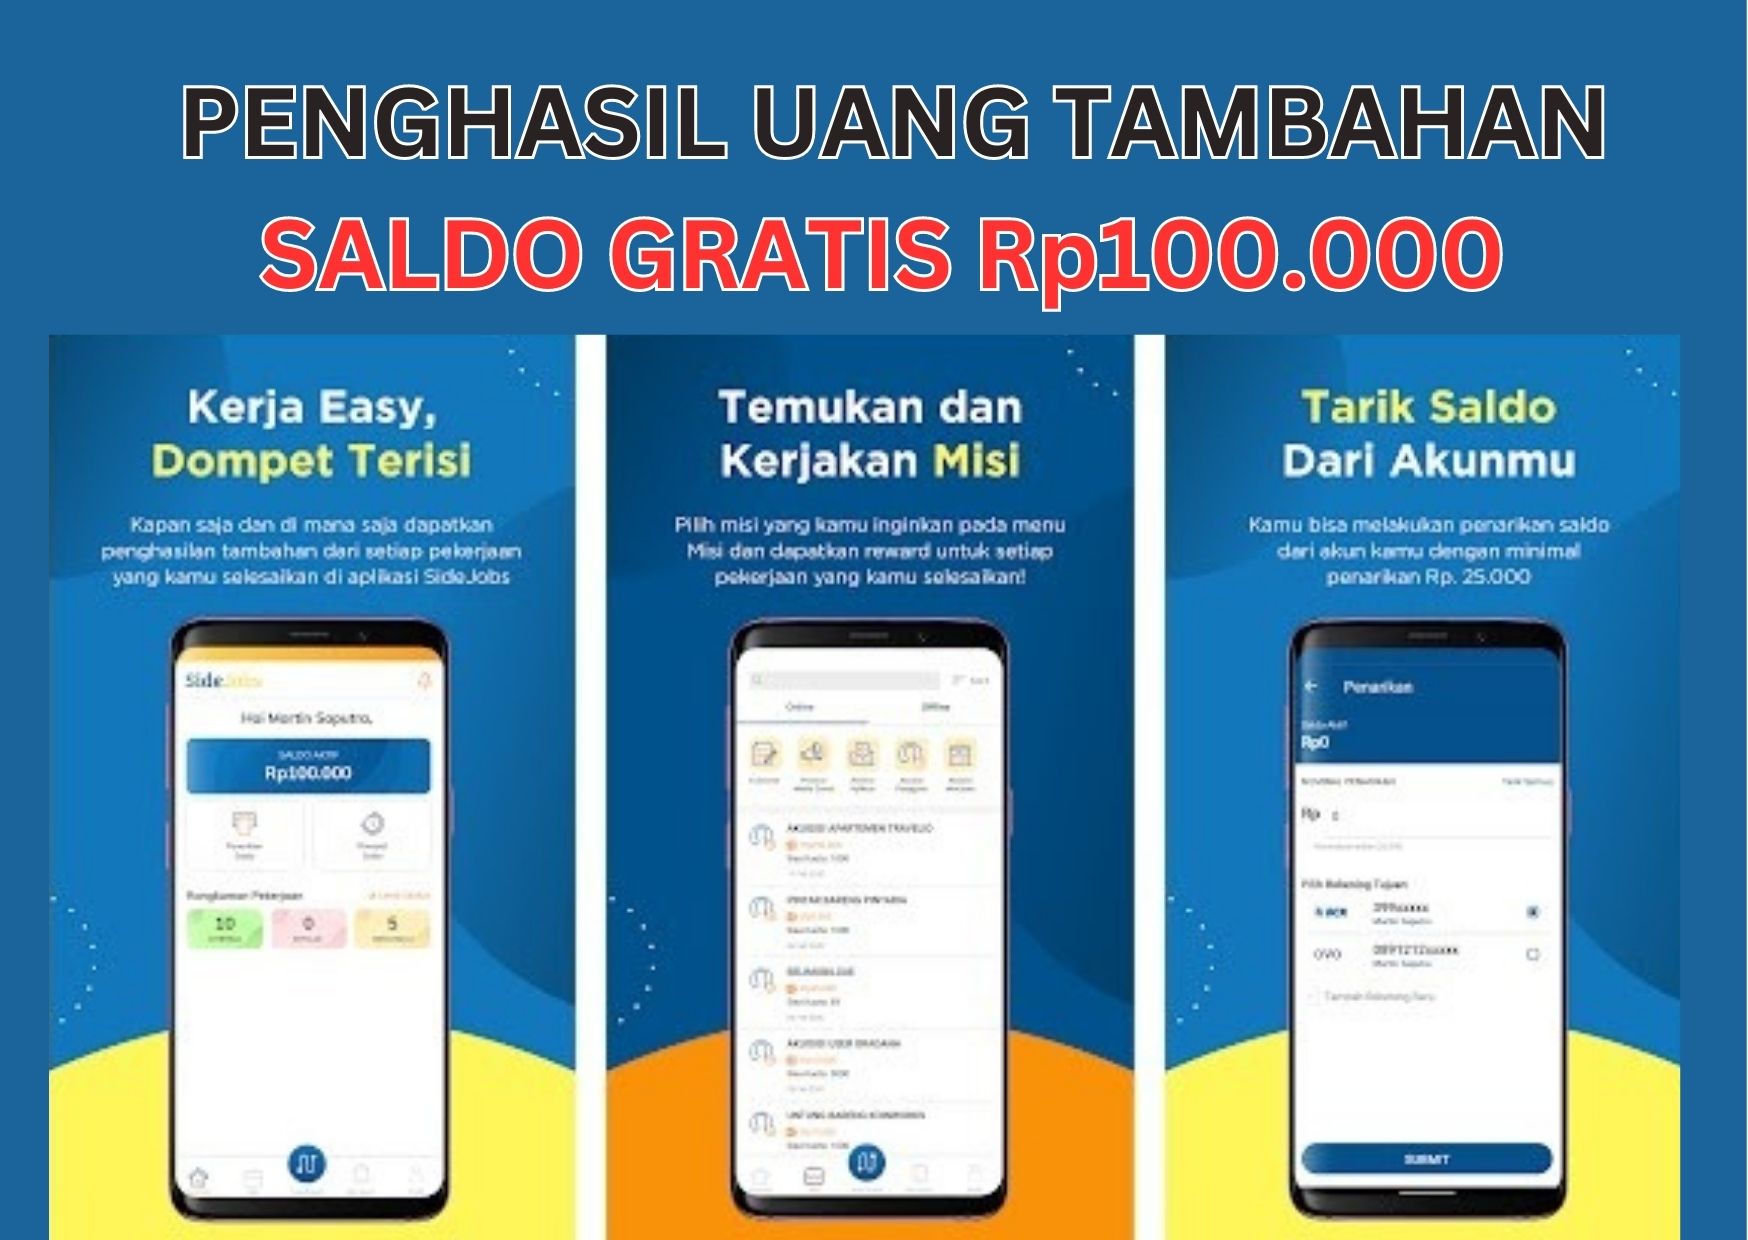 Aplikasi Penghasil Uang Tambahan, Dapat Saldo Gratis Rp100.000 Cukup Luangkan Waktu 1 Jam